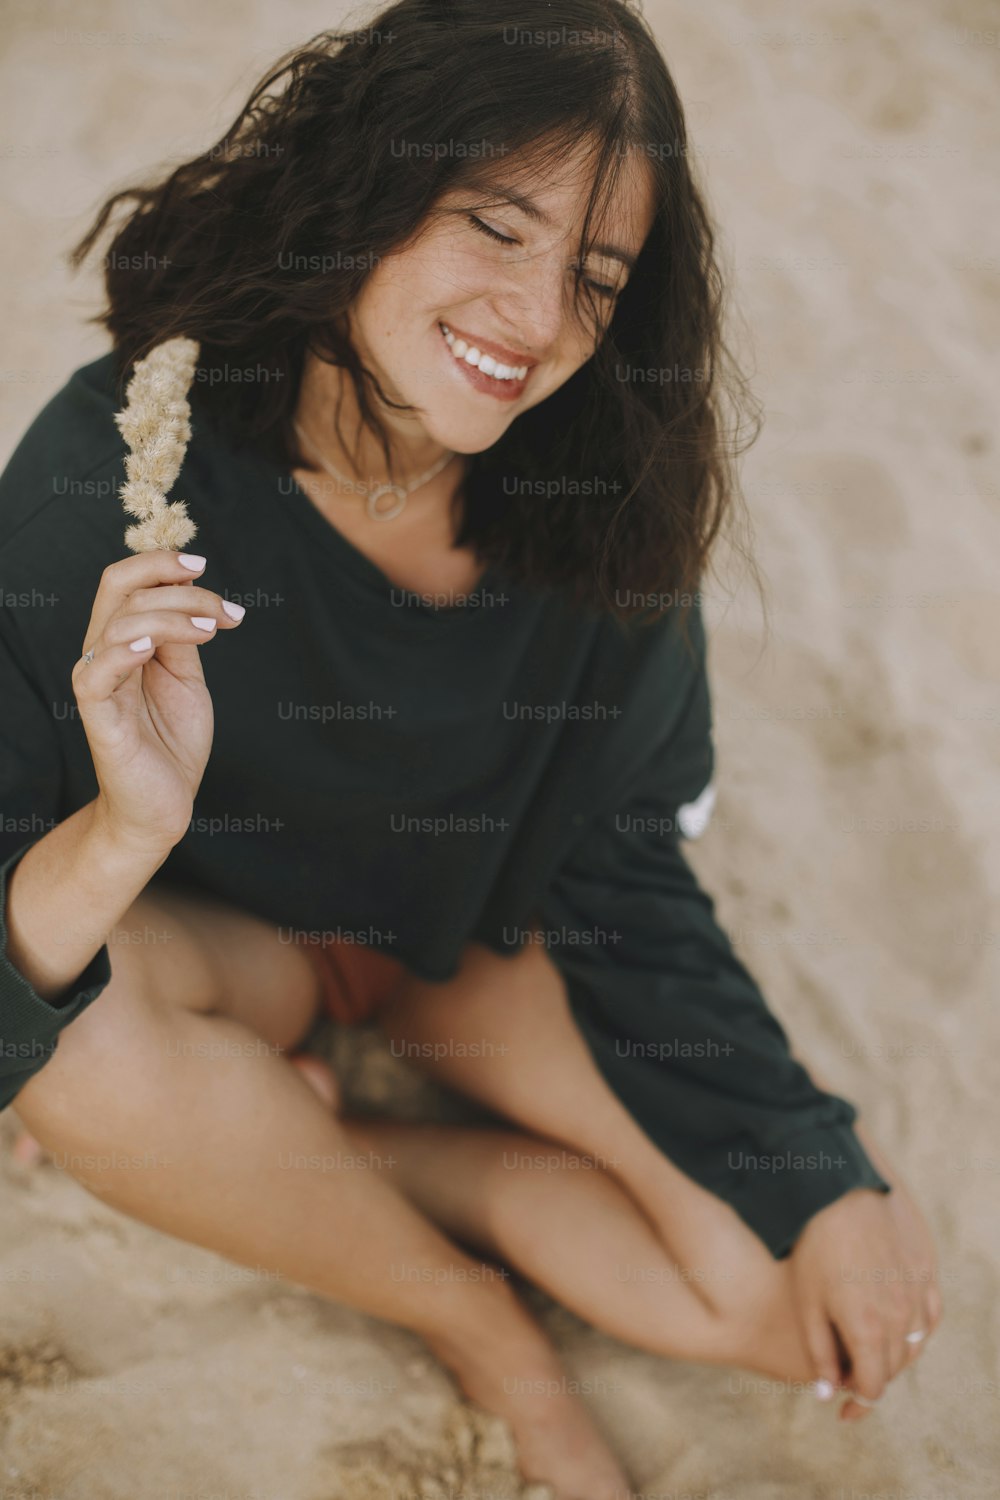 風の強い髪の屈託のないヒップスターの女の子が砂浜に座って微笑み、ハーブを持っています。モダンな水着とセーターを着たスタイリッシュな日焼けした若い女性が海岸でリラックスしています。夏休み